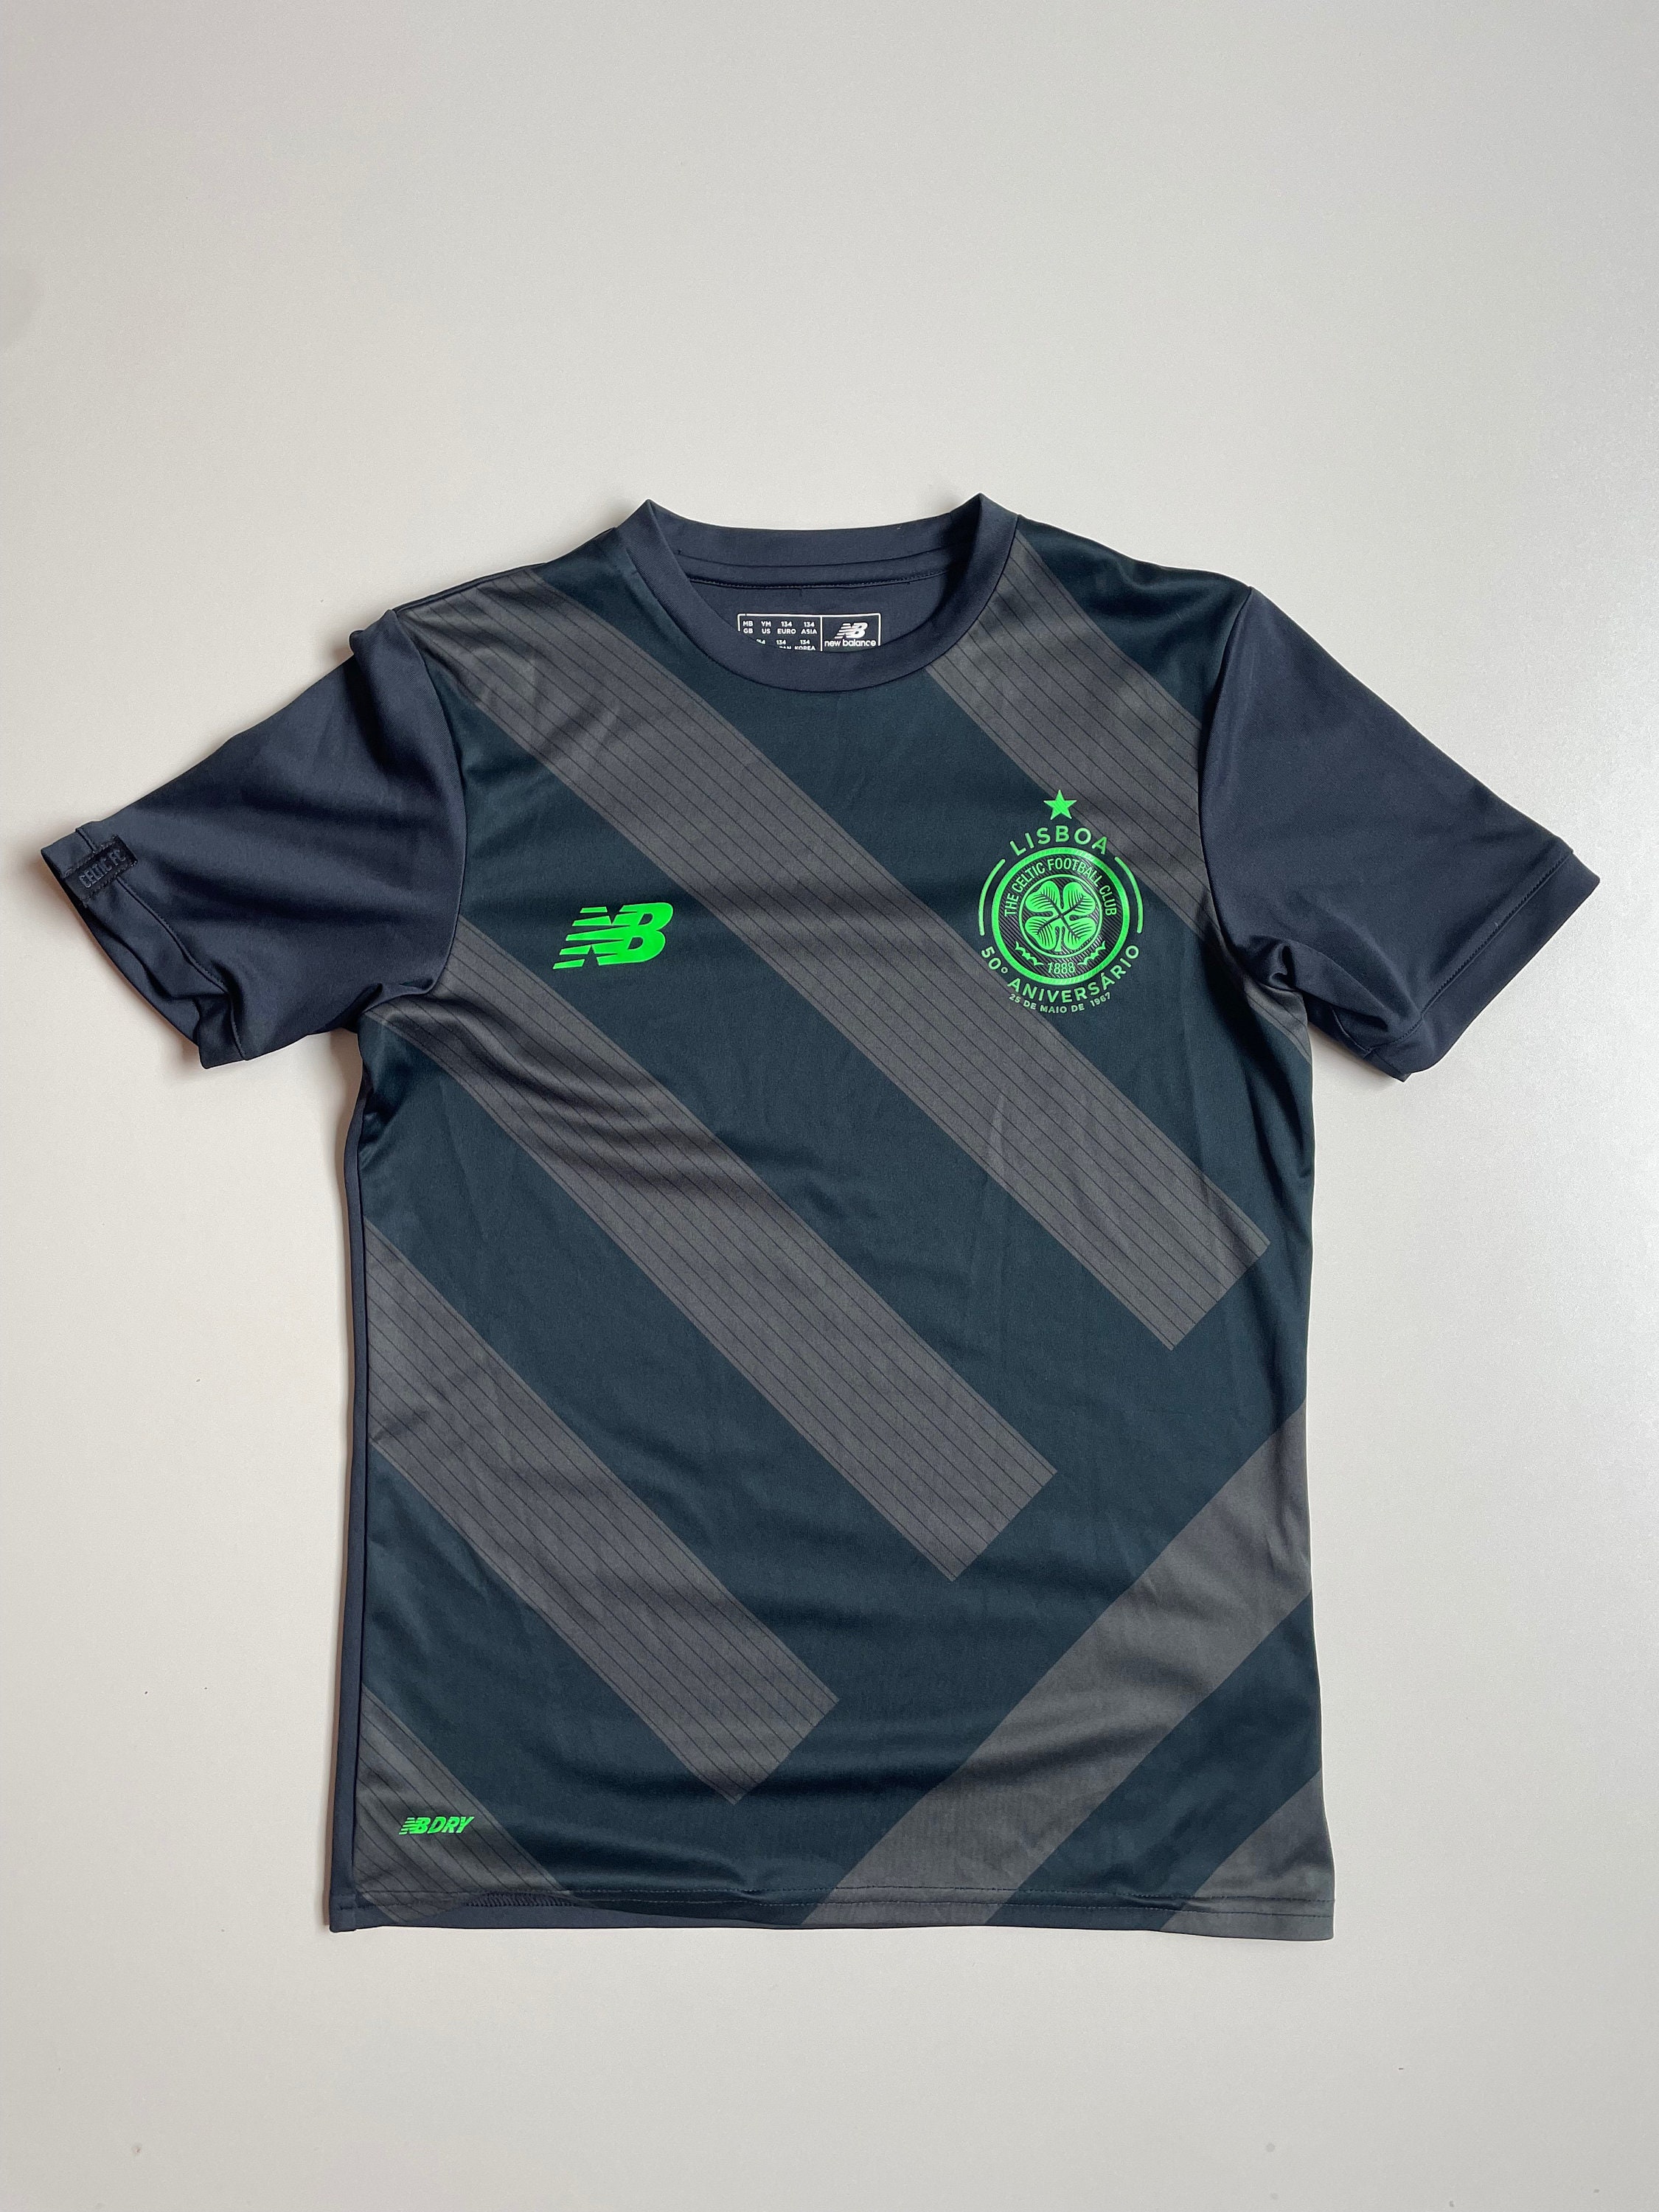 Celtic FC 1967 Retro Lisbon Lions Black T-Shirt Small to 5XL- Bhoys Glasgow